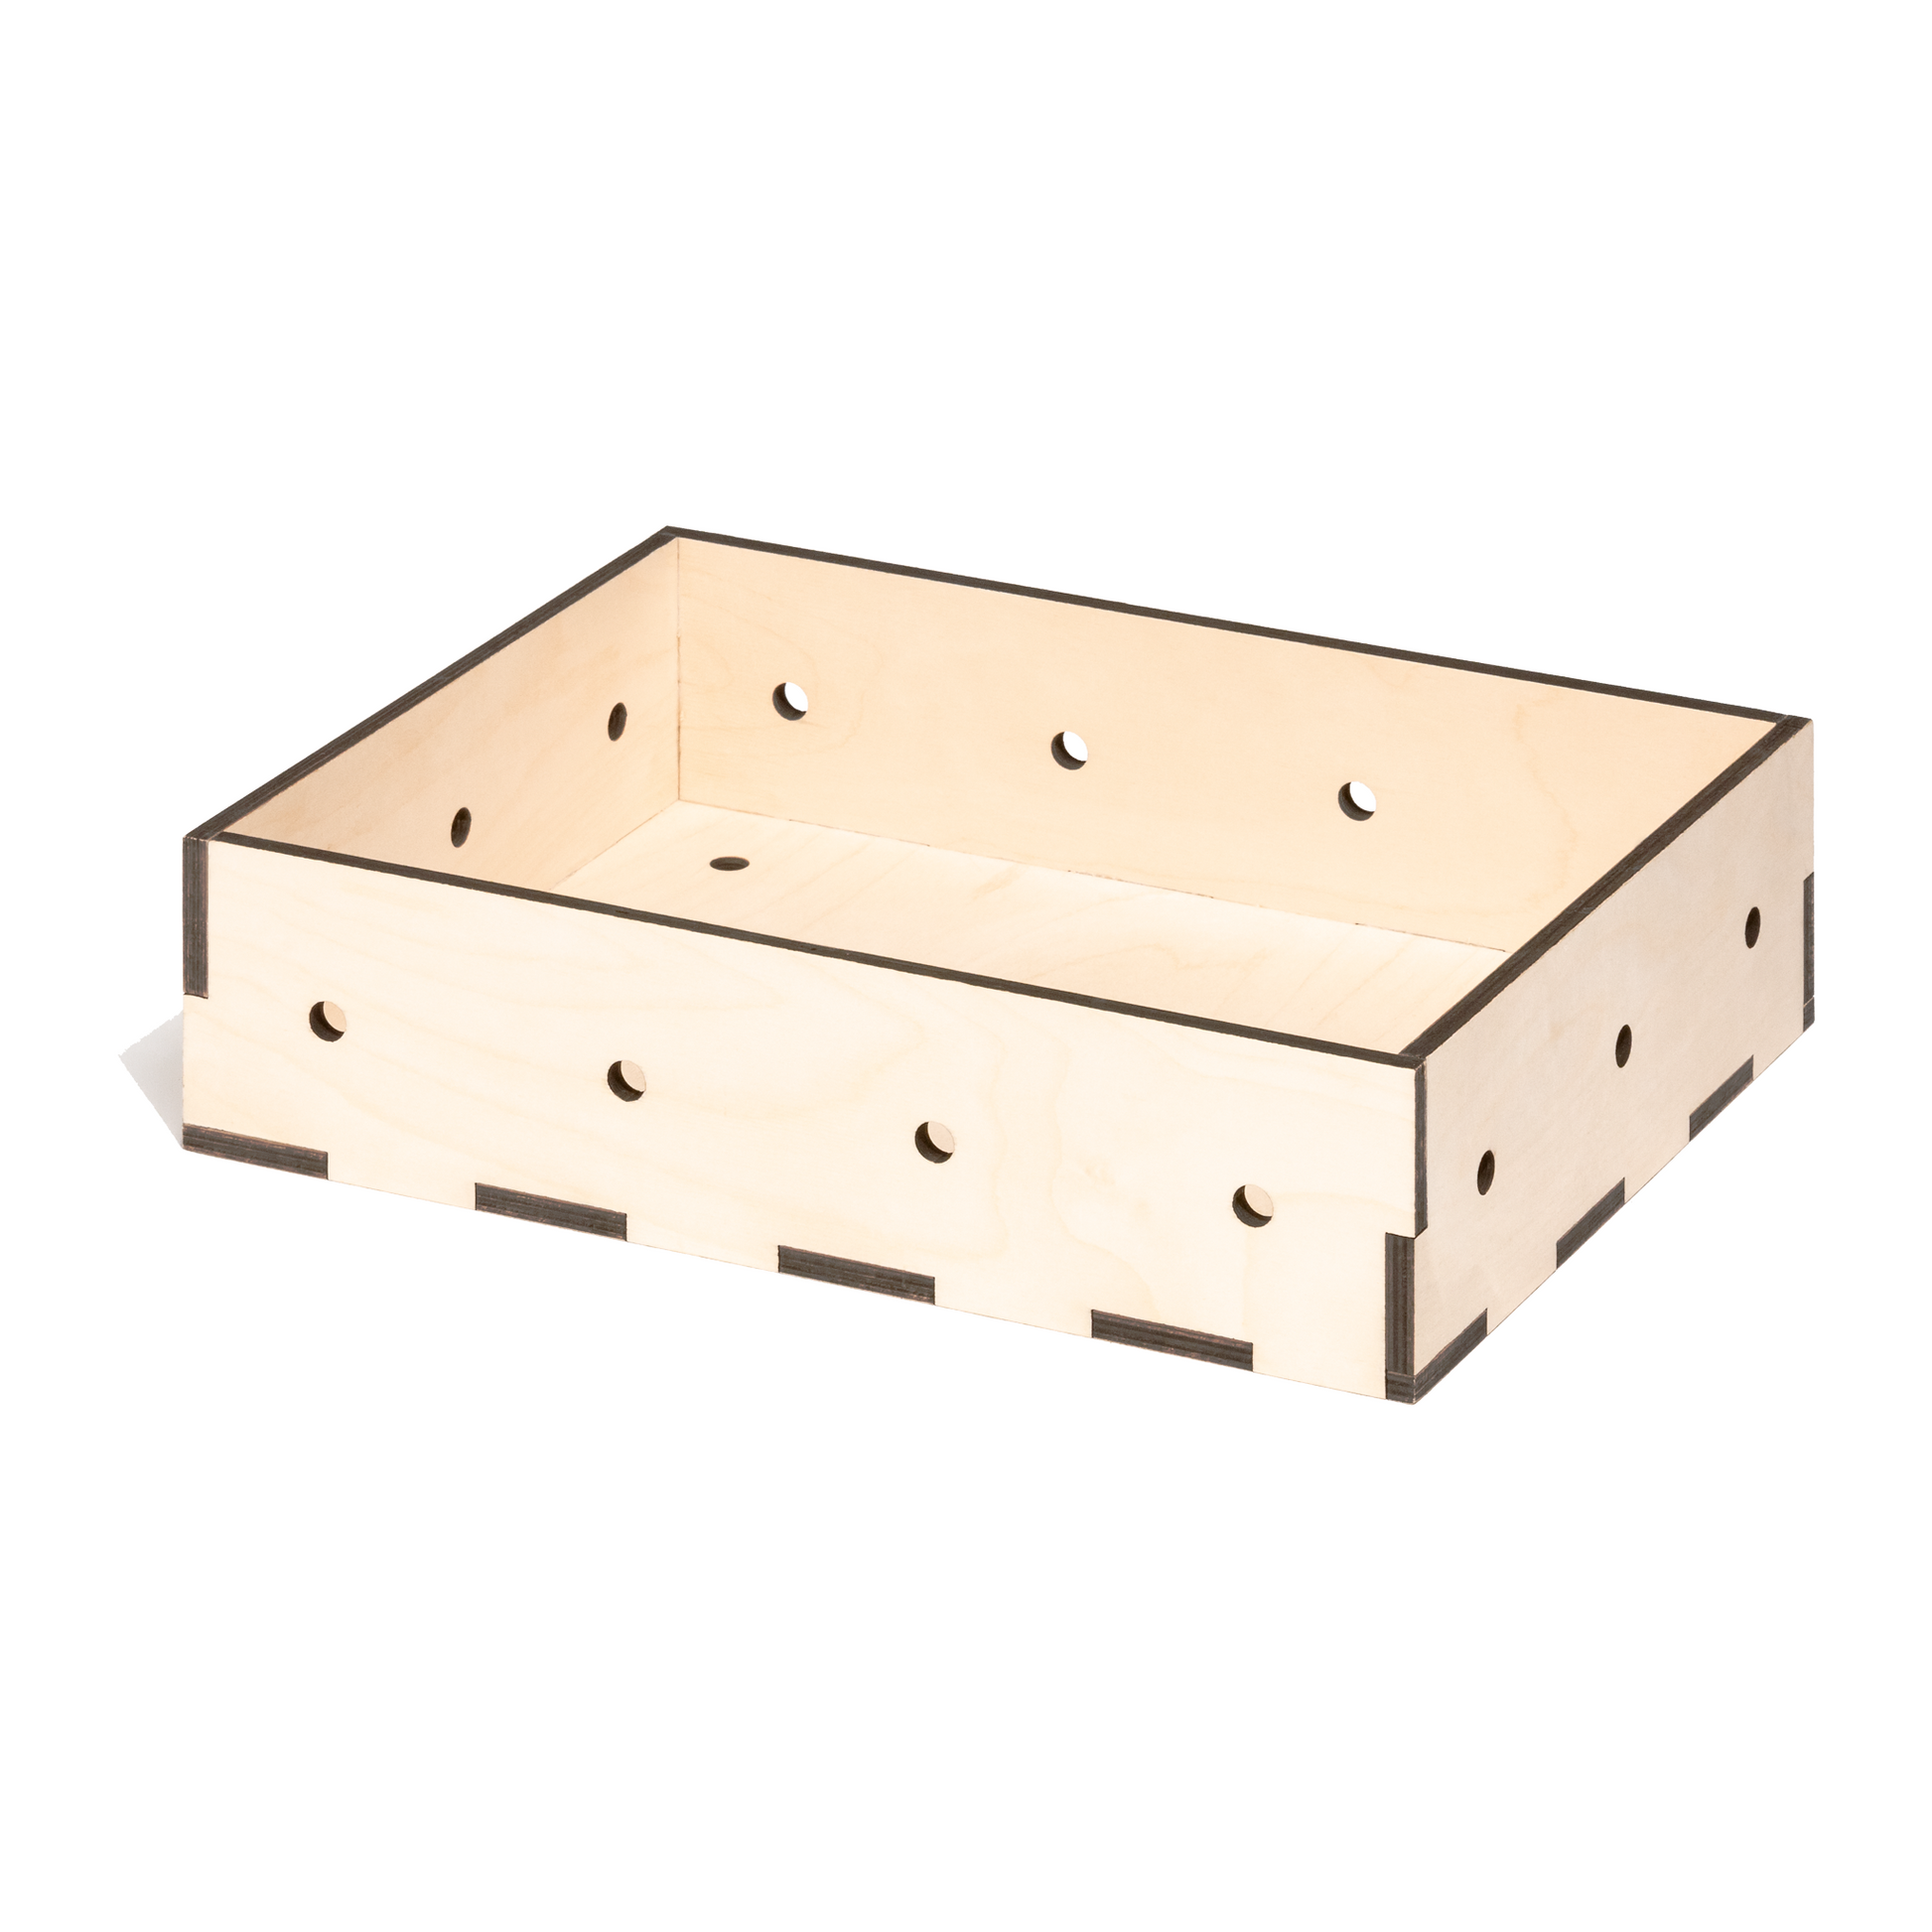 Kiste aus gelasertem Holz im Euroboxformat 40 x 30 x 10 cm mit Lochraster zum Befestigen